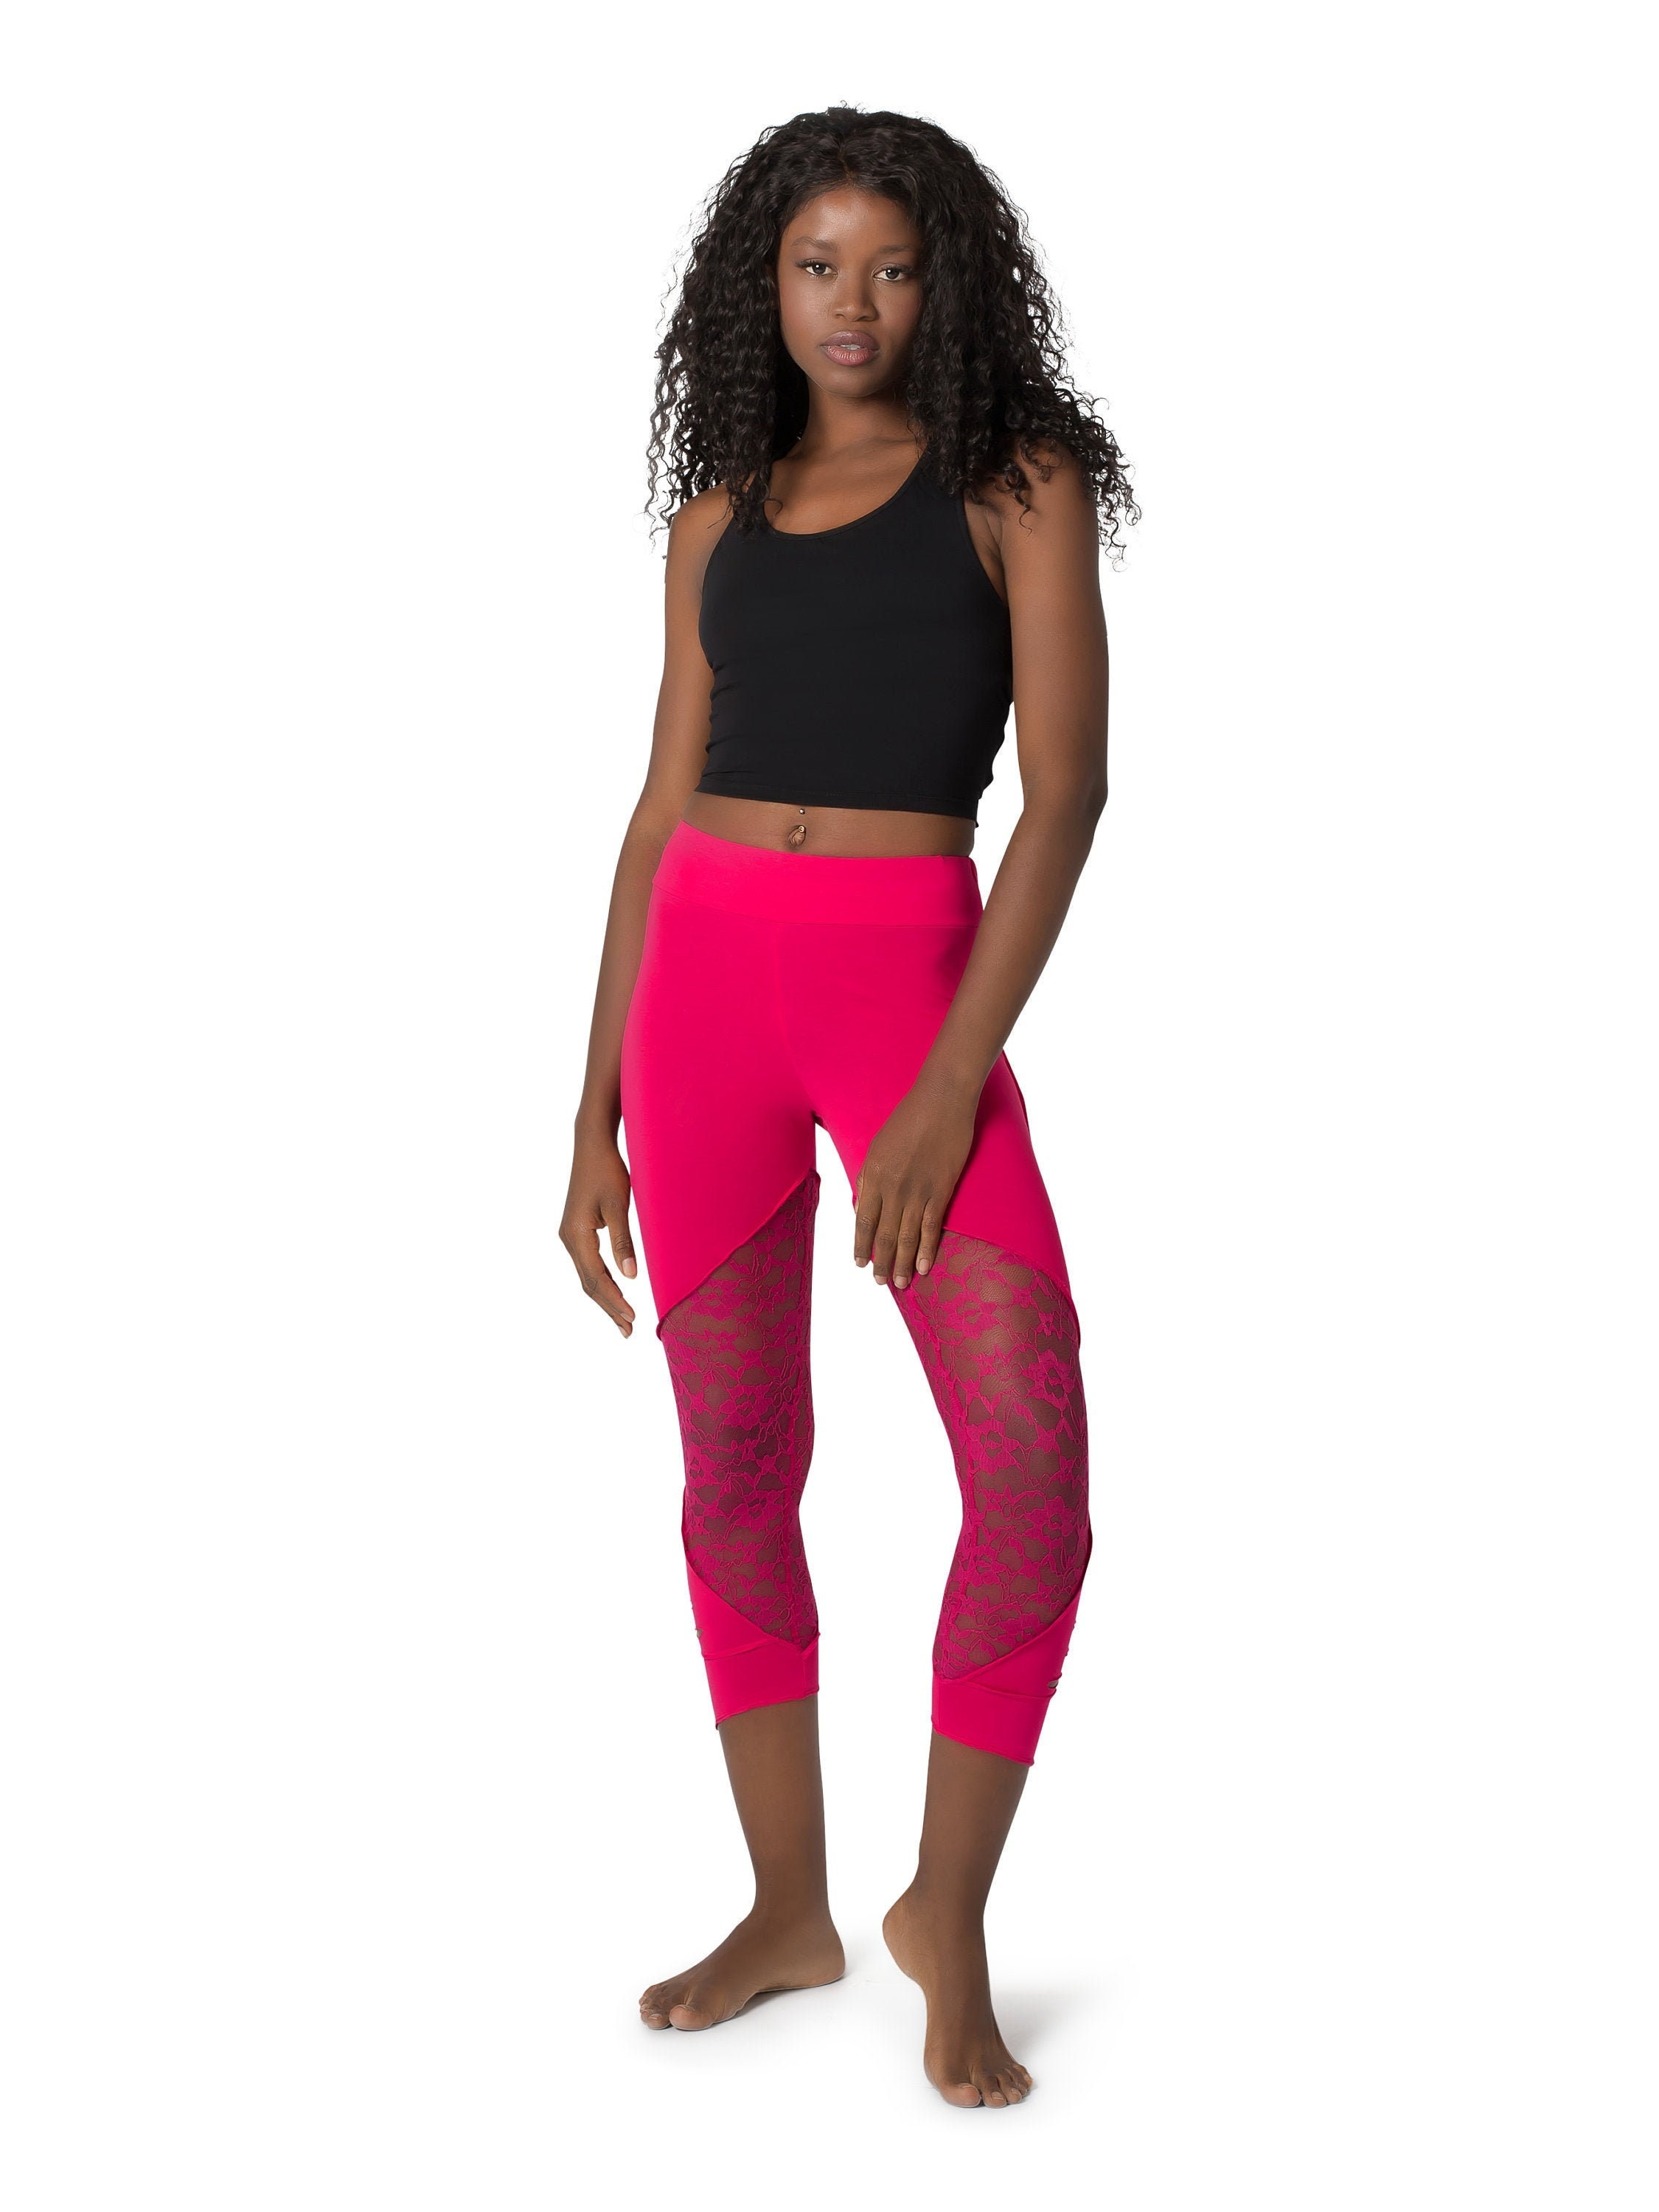 Lululemon Sun Runner Crop Pink Tie Dye Leggings Women's Size 4